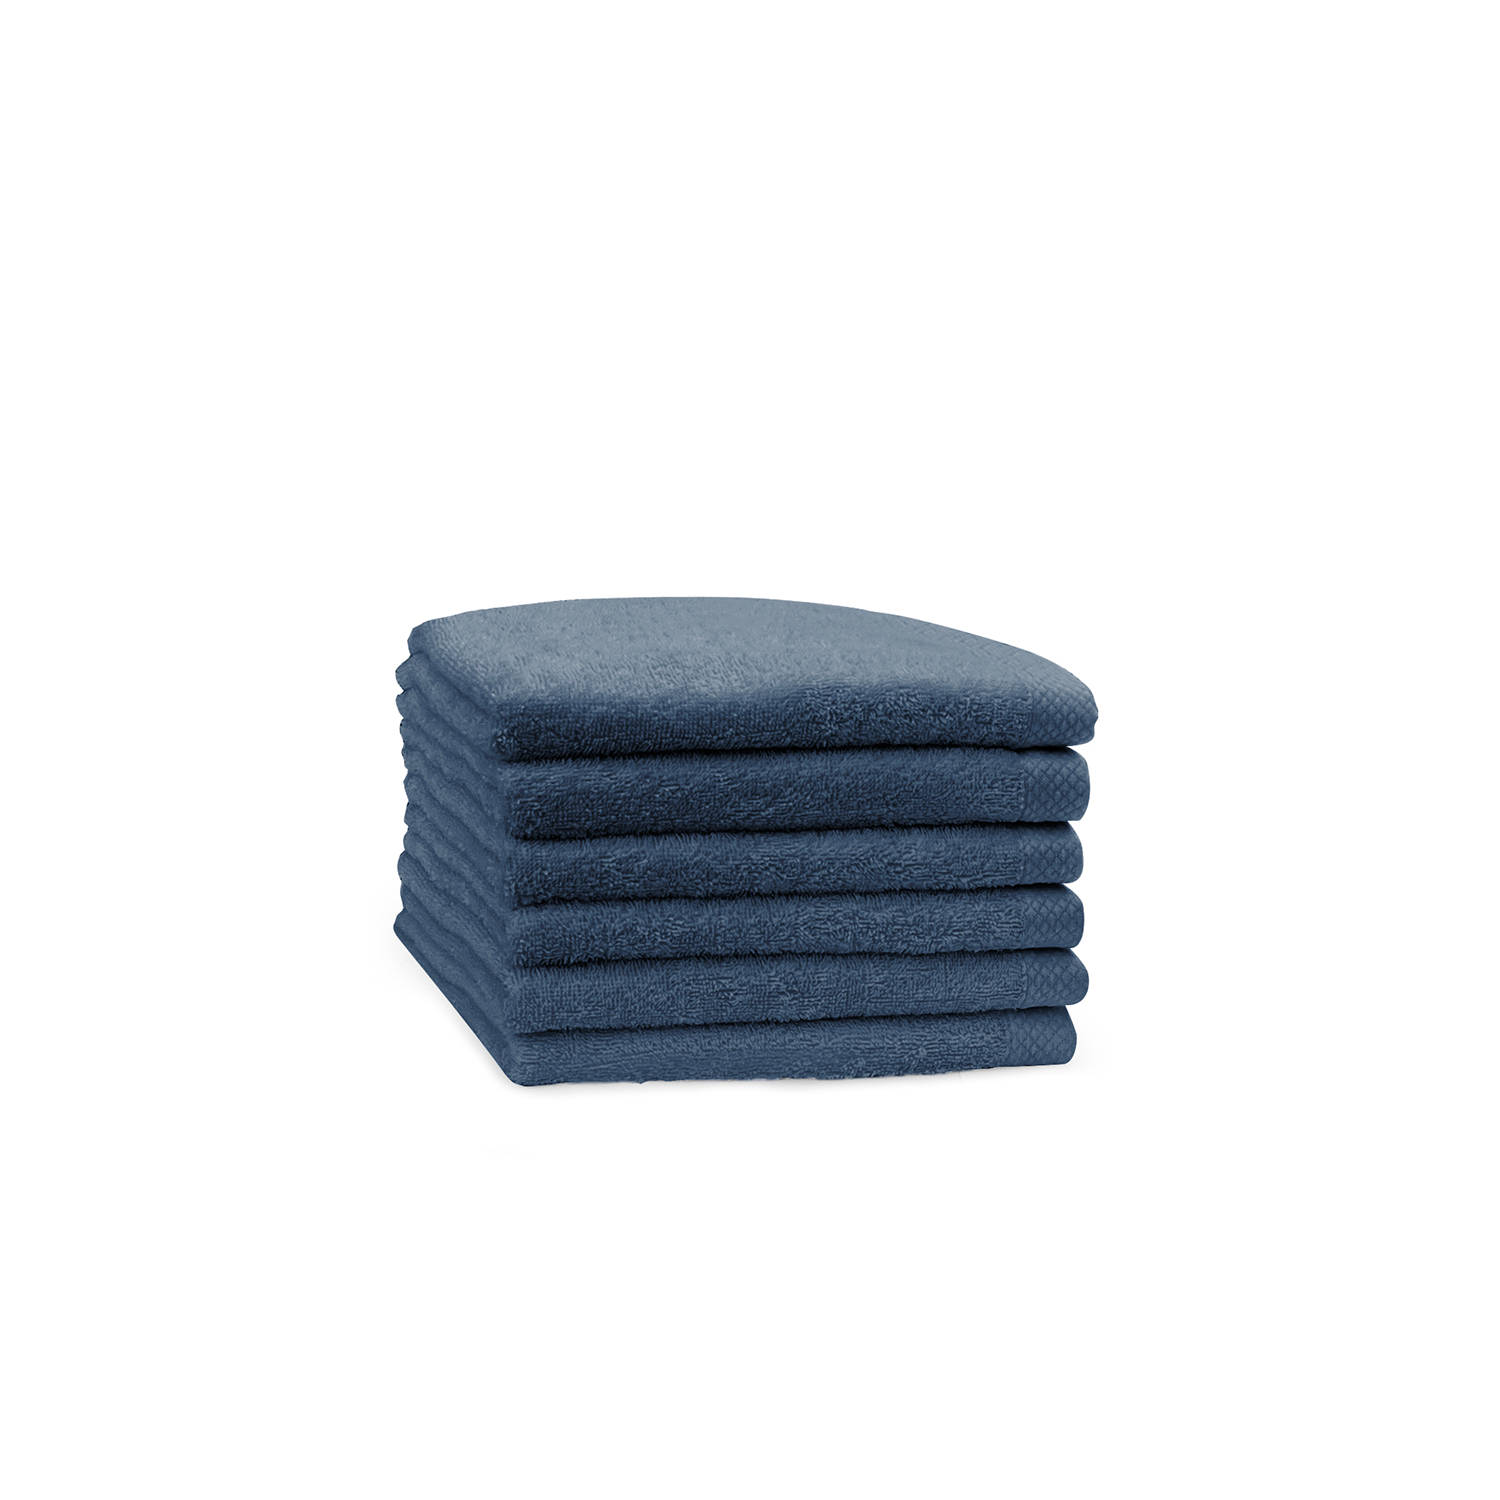 Eleganzzz Handdoek 100% Katoen 50x100cm - ocean blue - Set van 6